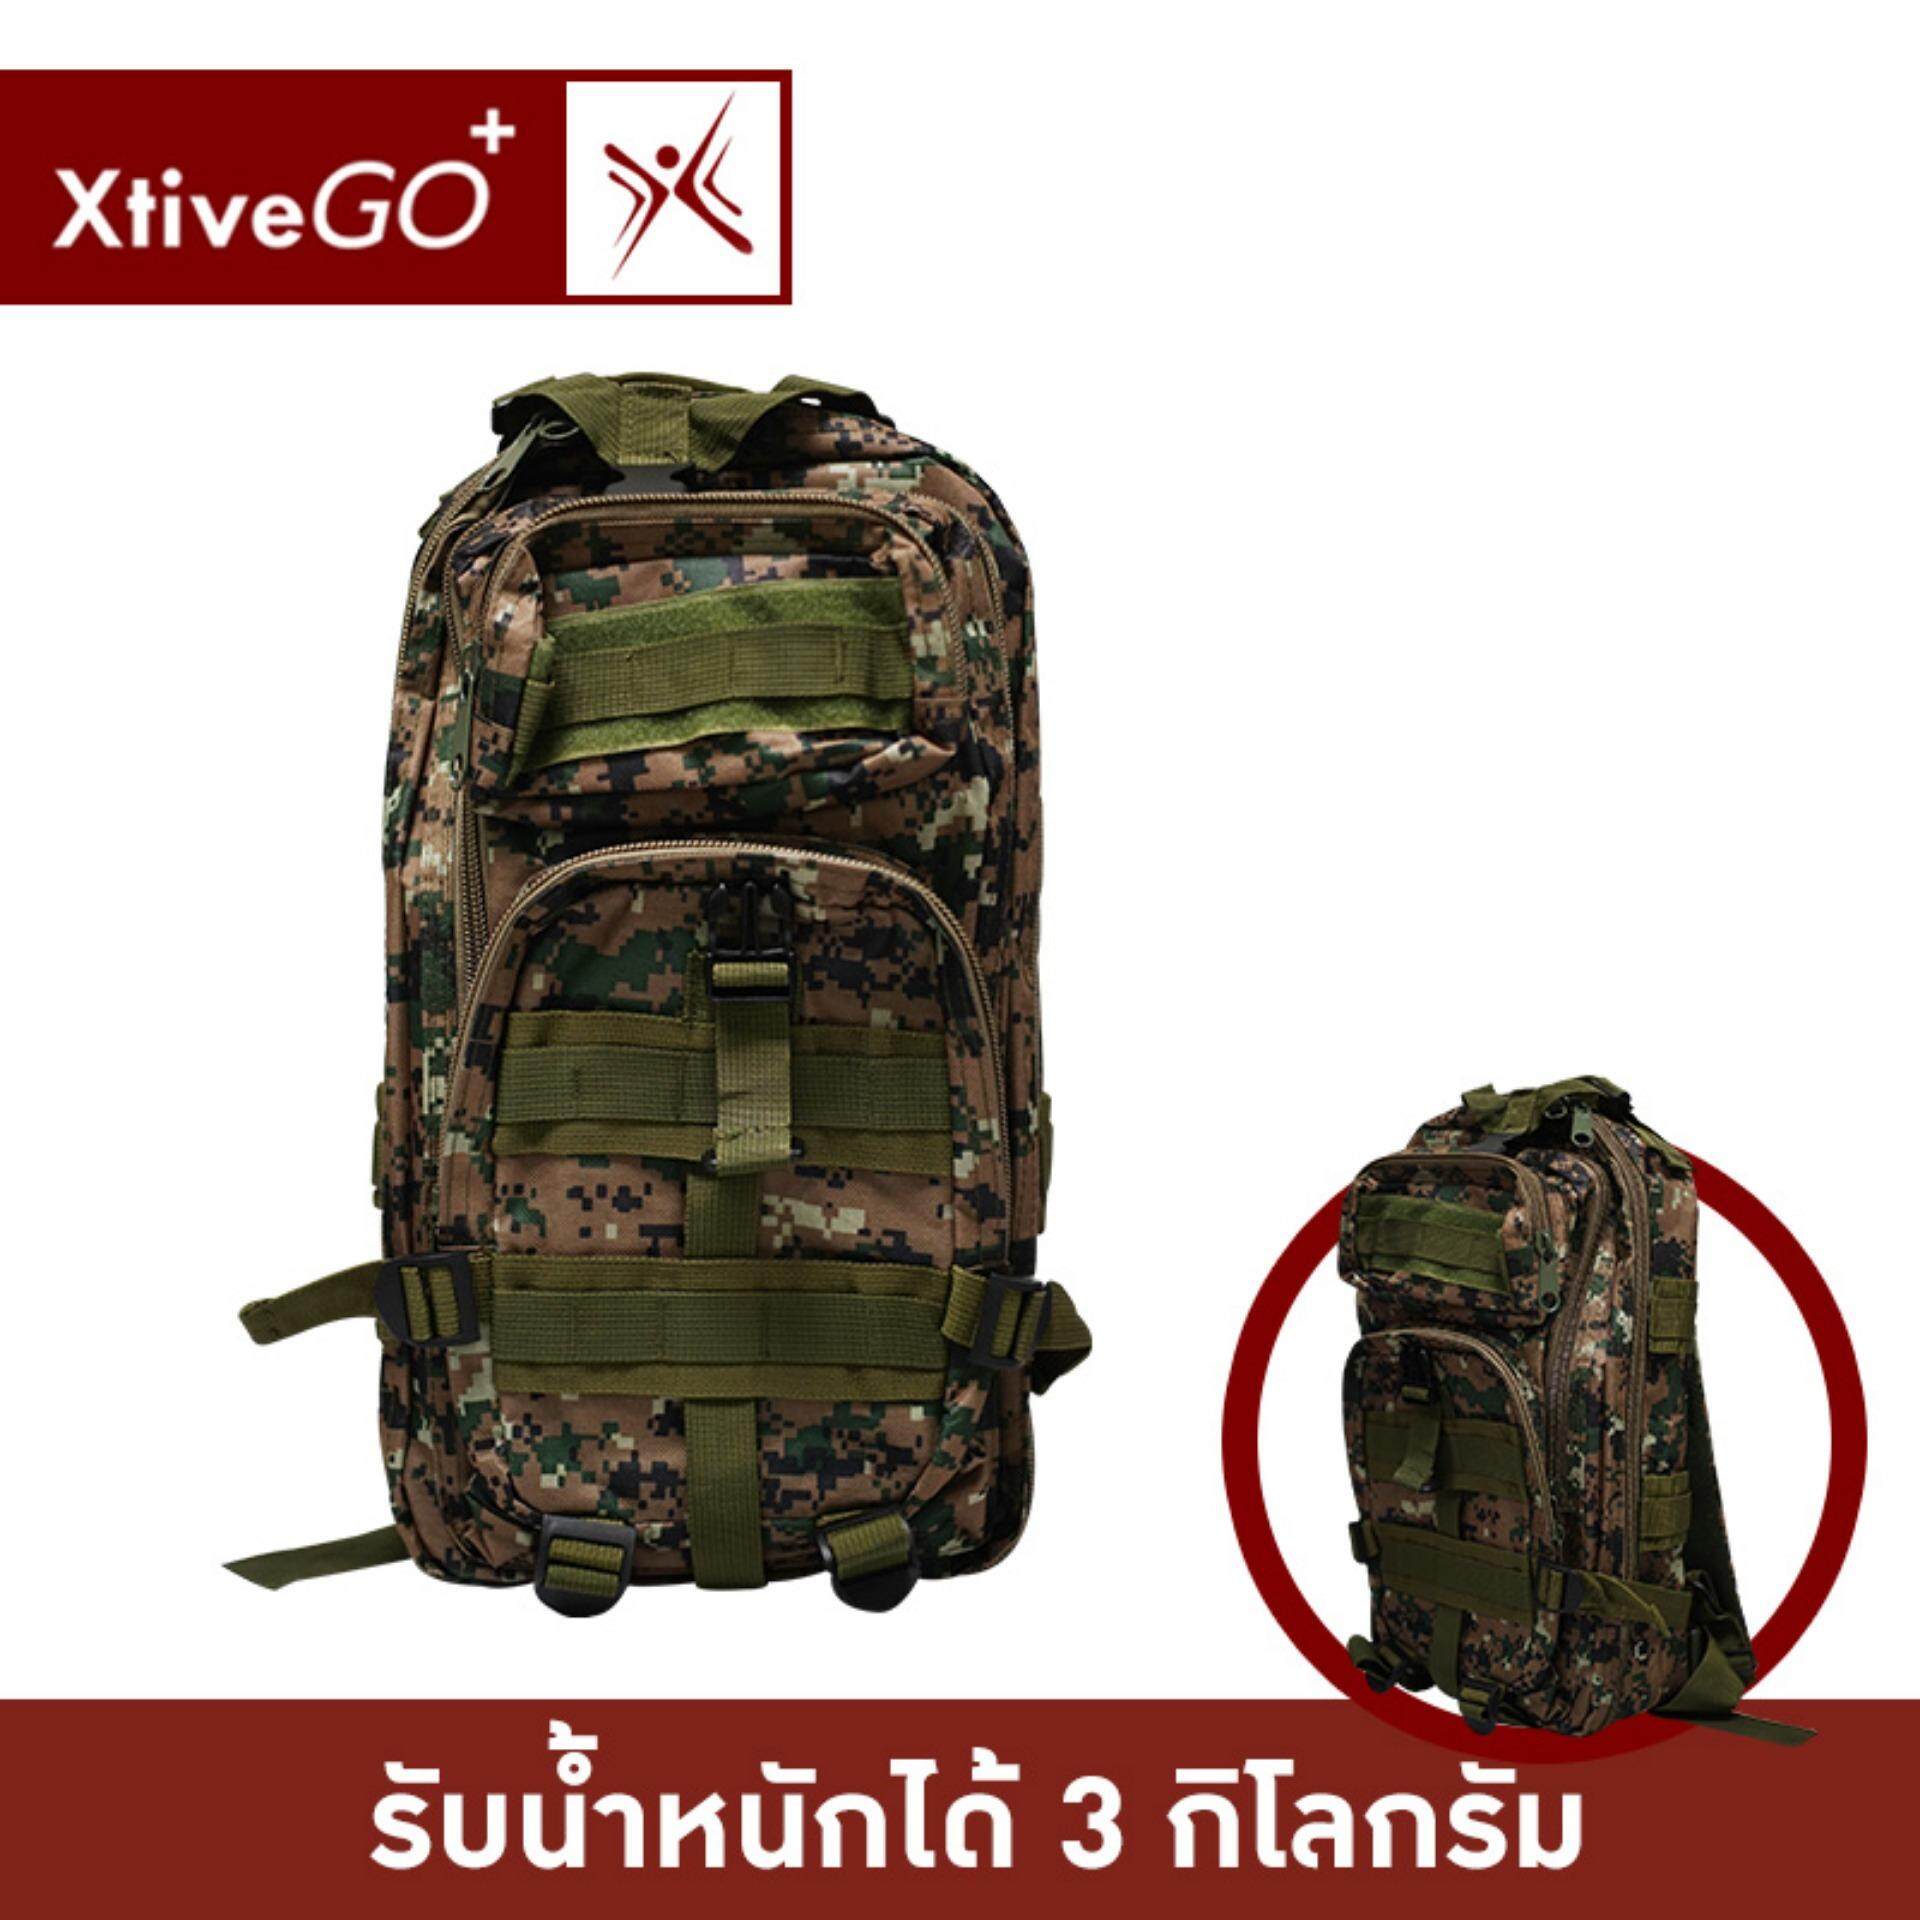 XtivePro 3P Tactical Backpack Bag กระเป๋าเป้สะพายหลัง เดินป่า กันน้ำ รับน้ำหนักได้ 3 กิโลกรัม กระเป๋าเป้ กระเป๋าเป้เดินทาง เป้สะพายหลัง กระเป๋าเป้สำหรับเดินป่า กระเป๋า camping bag